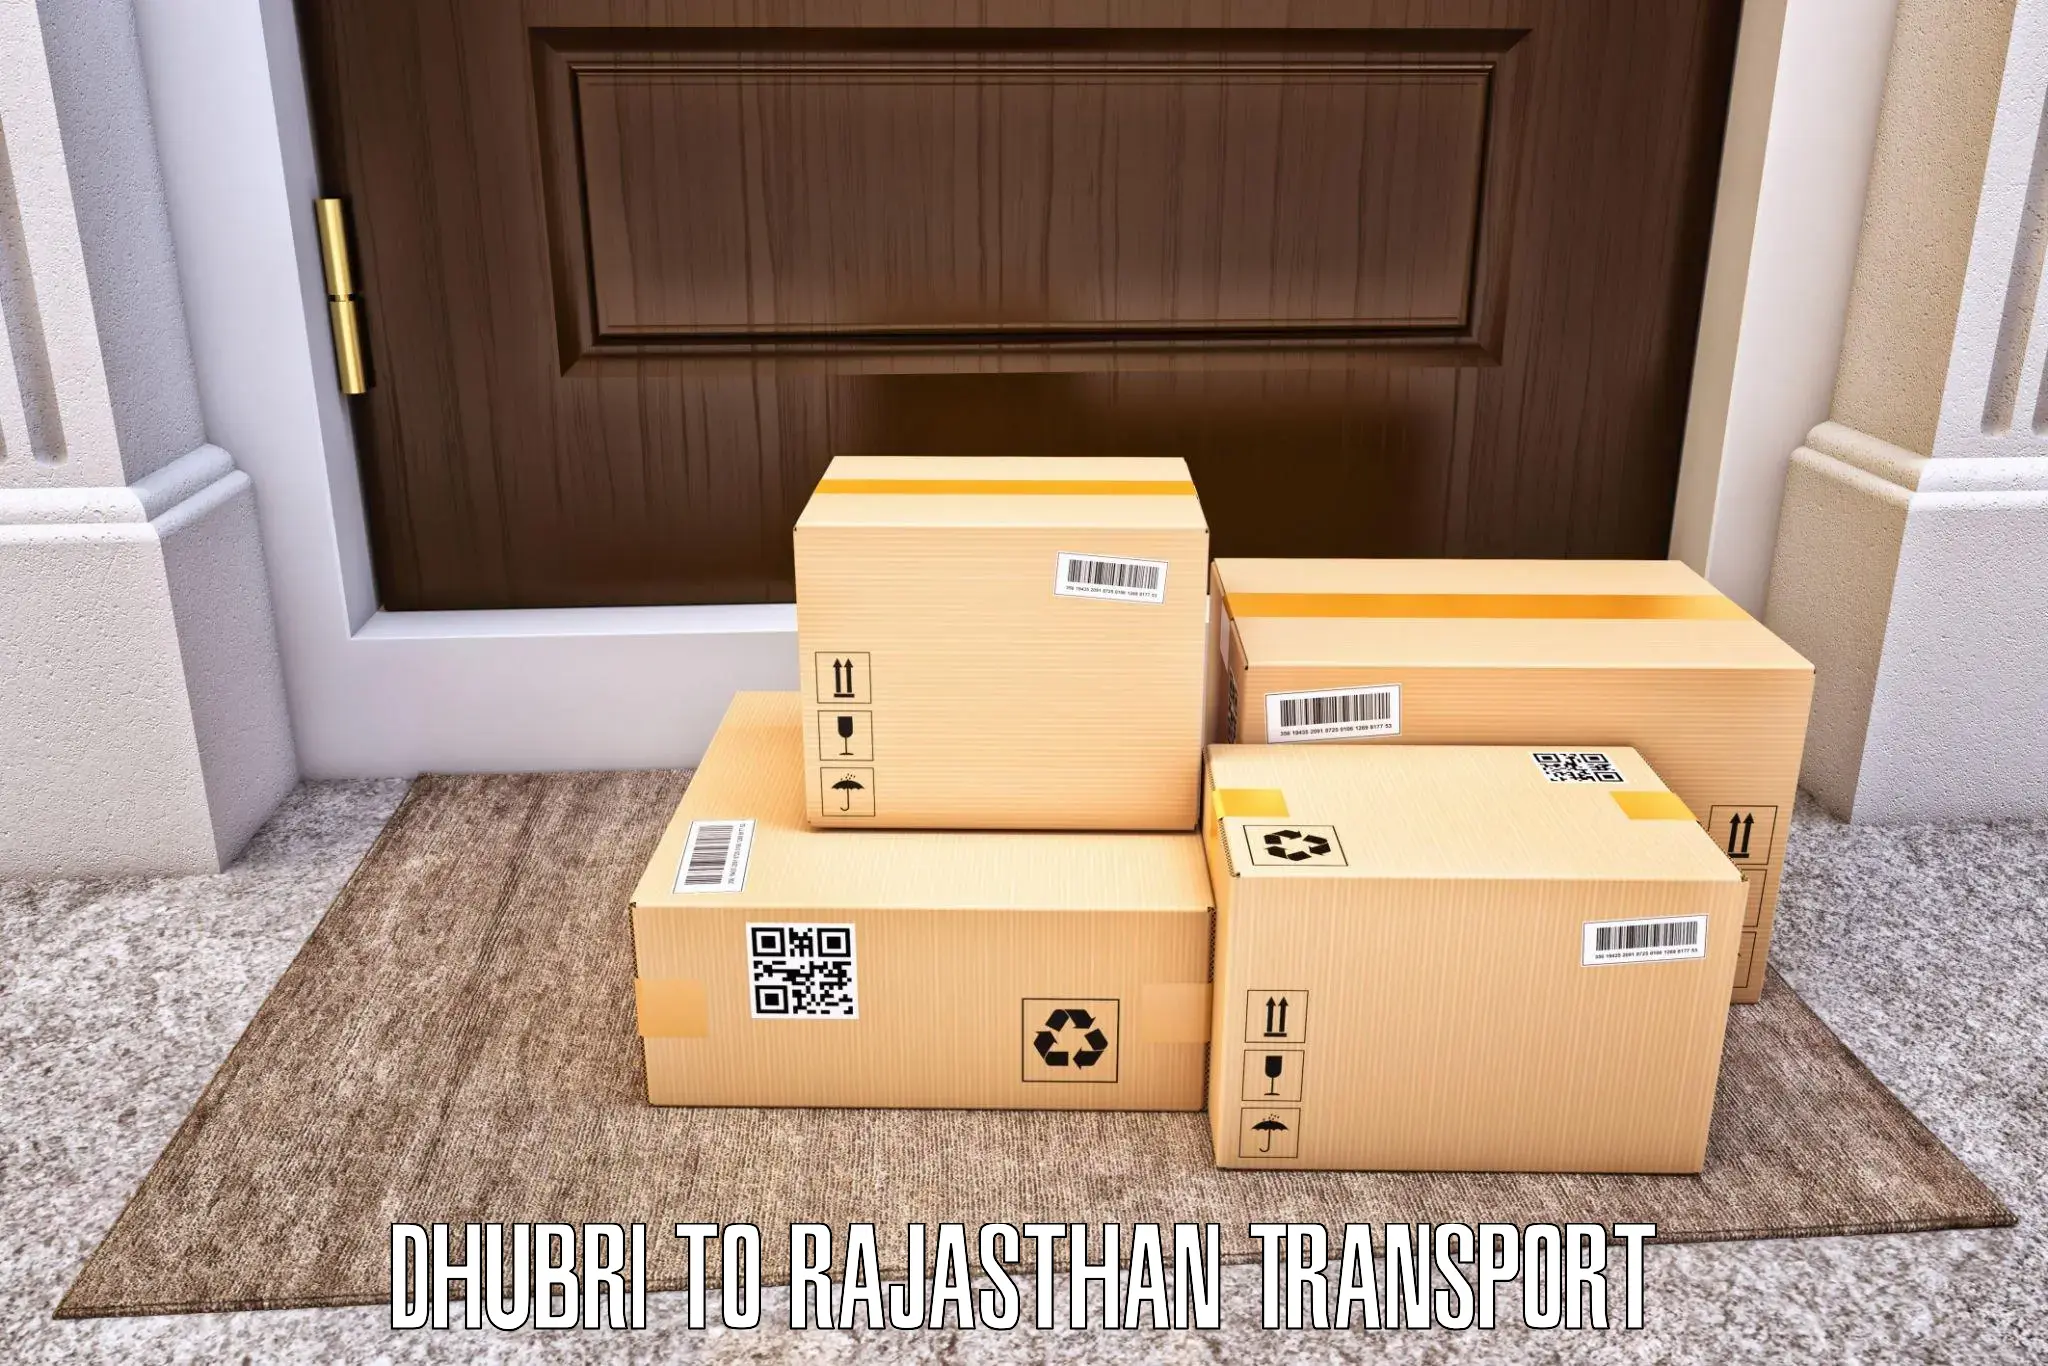 Luggage transport services Dhubri to Banswara